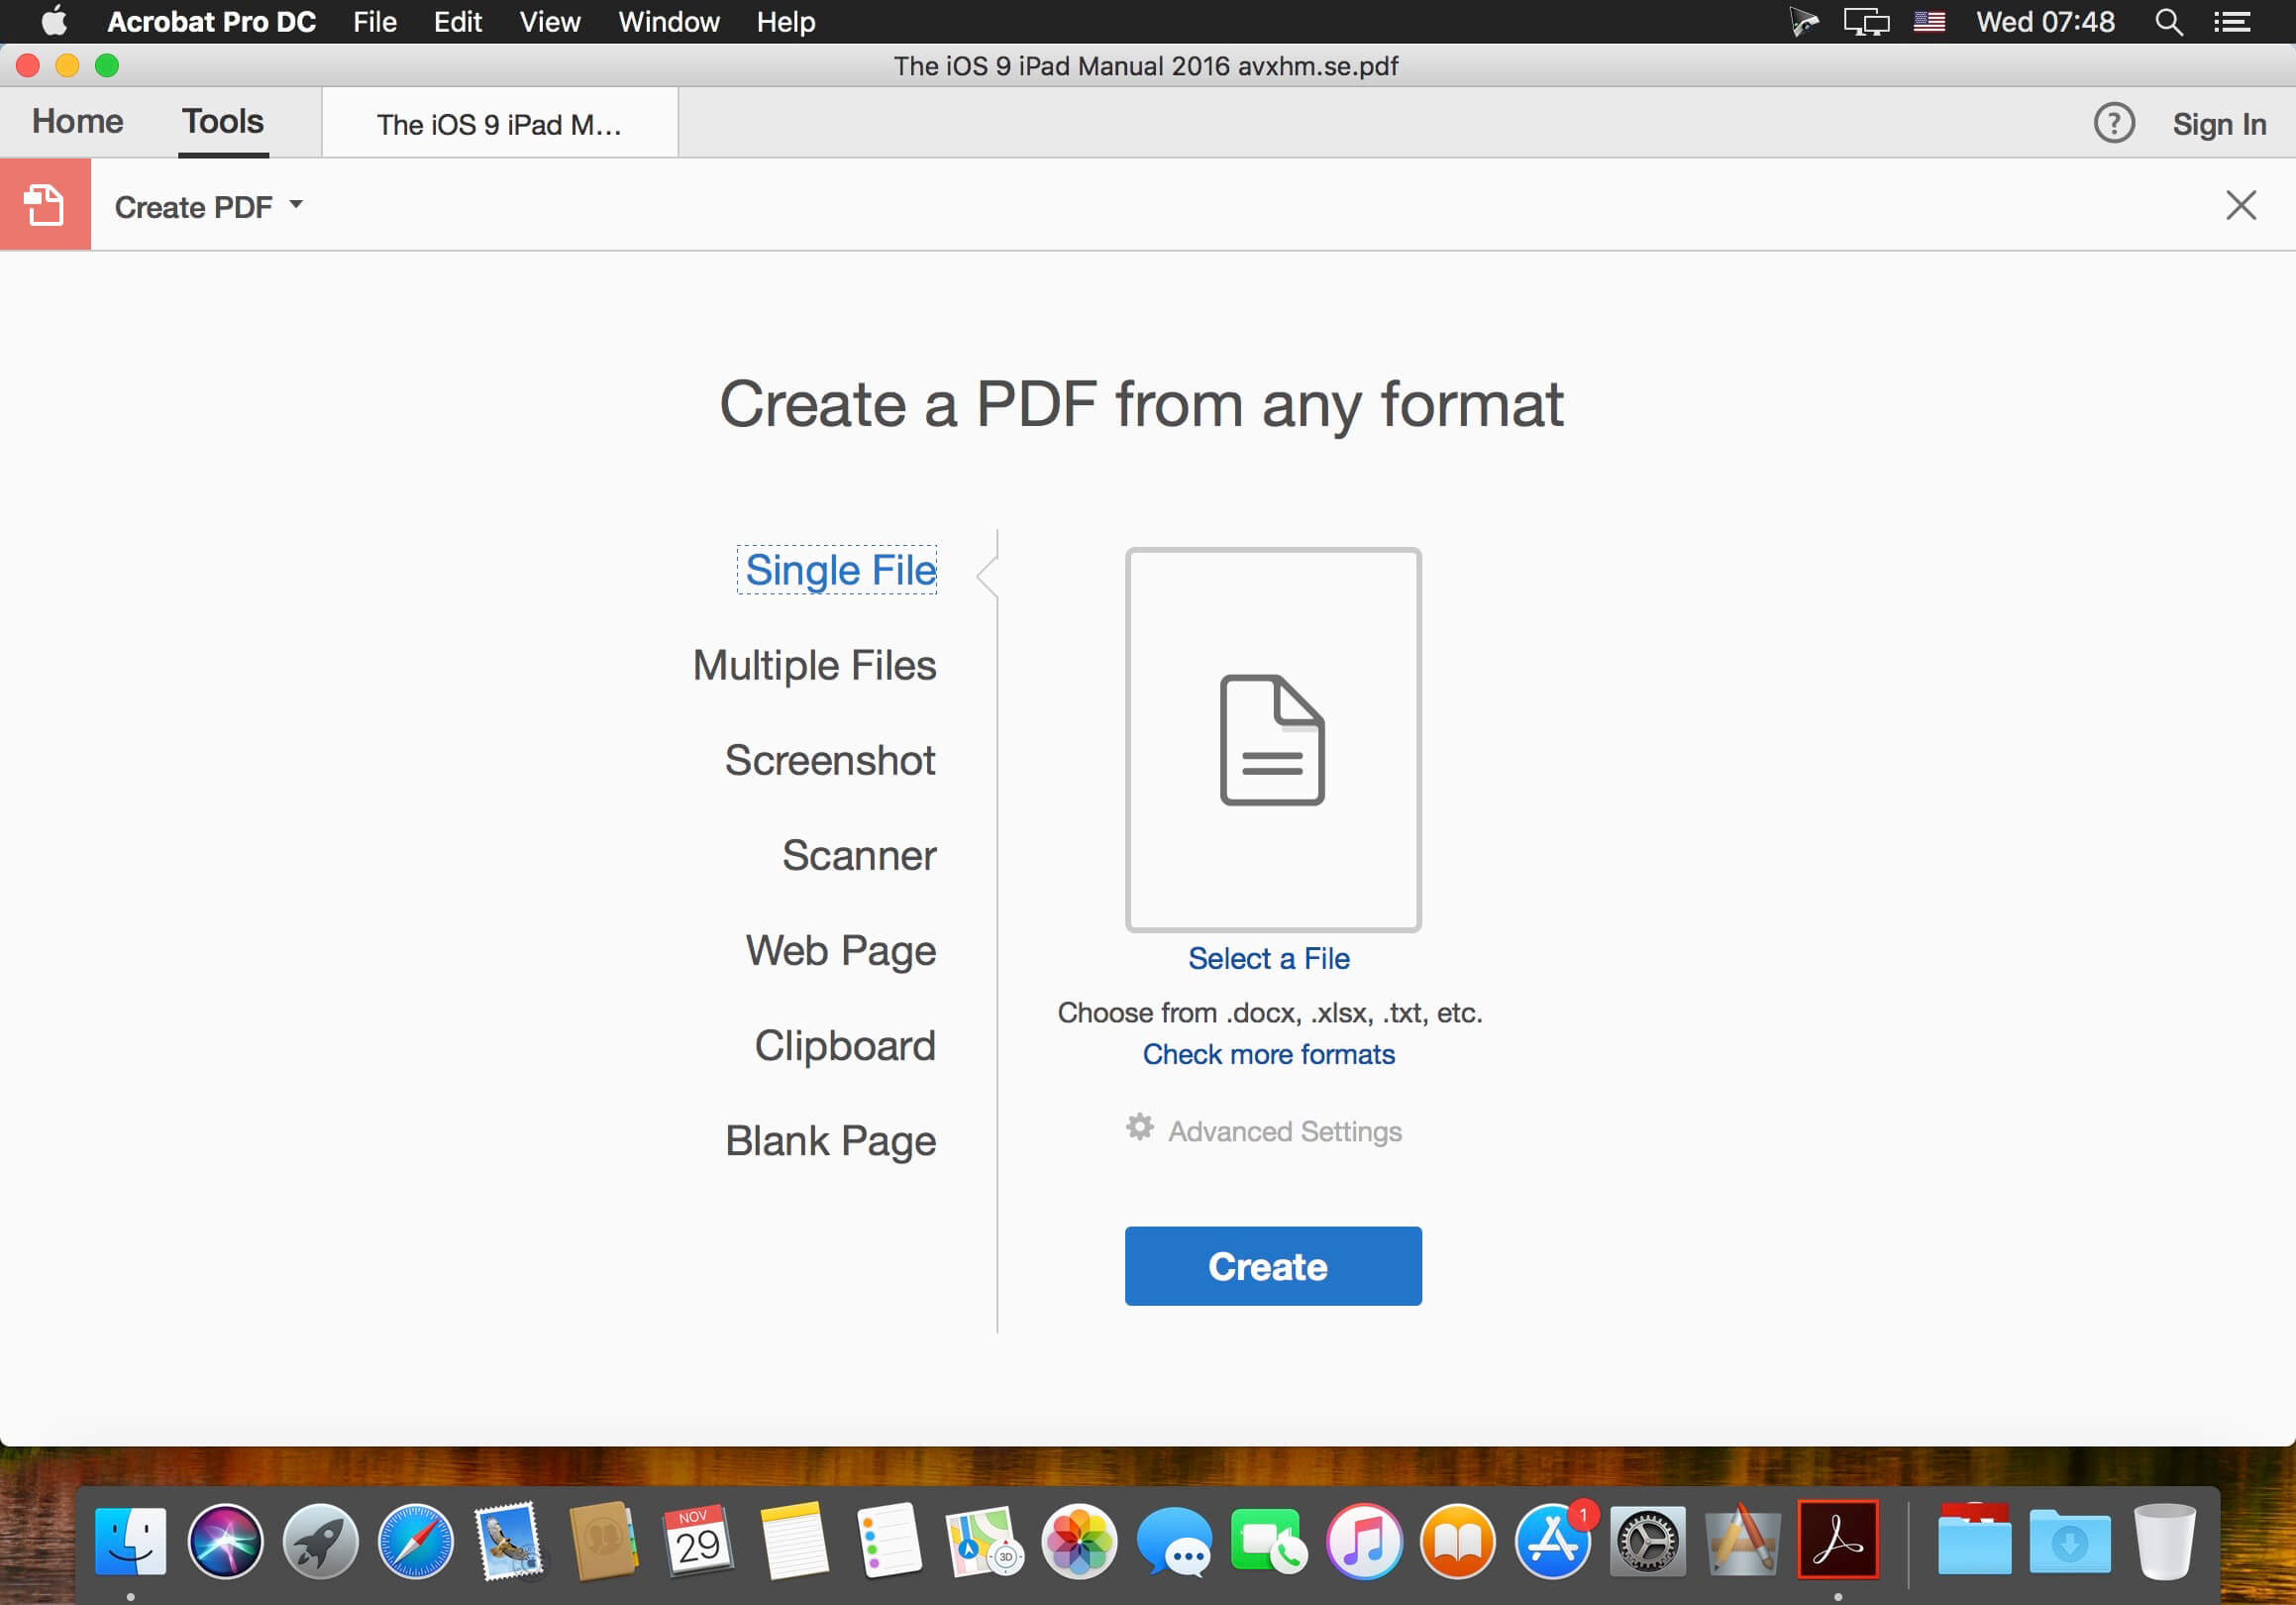 download pdf writer for mac free